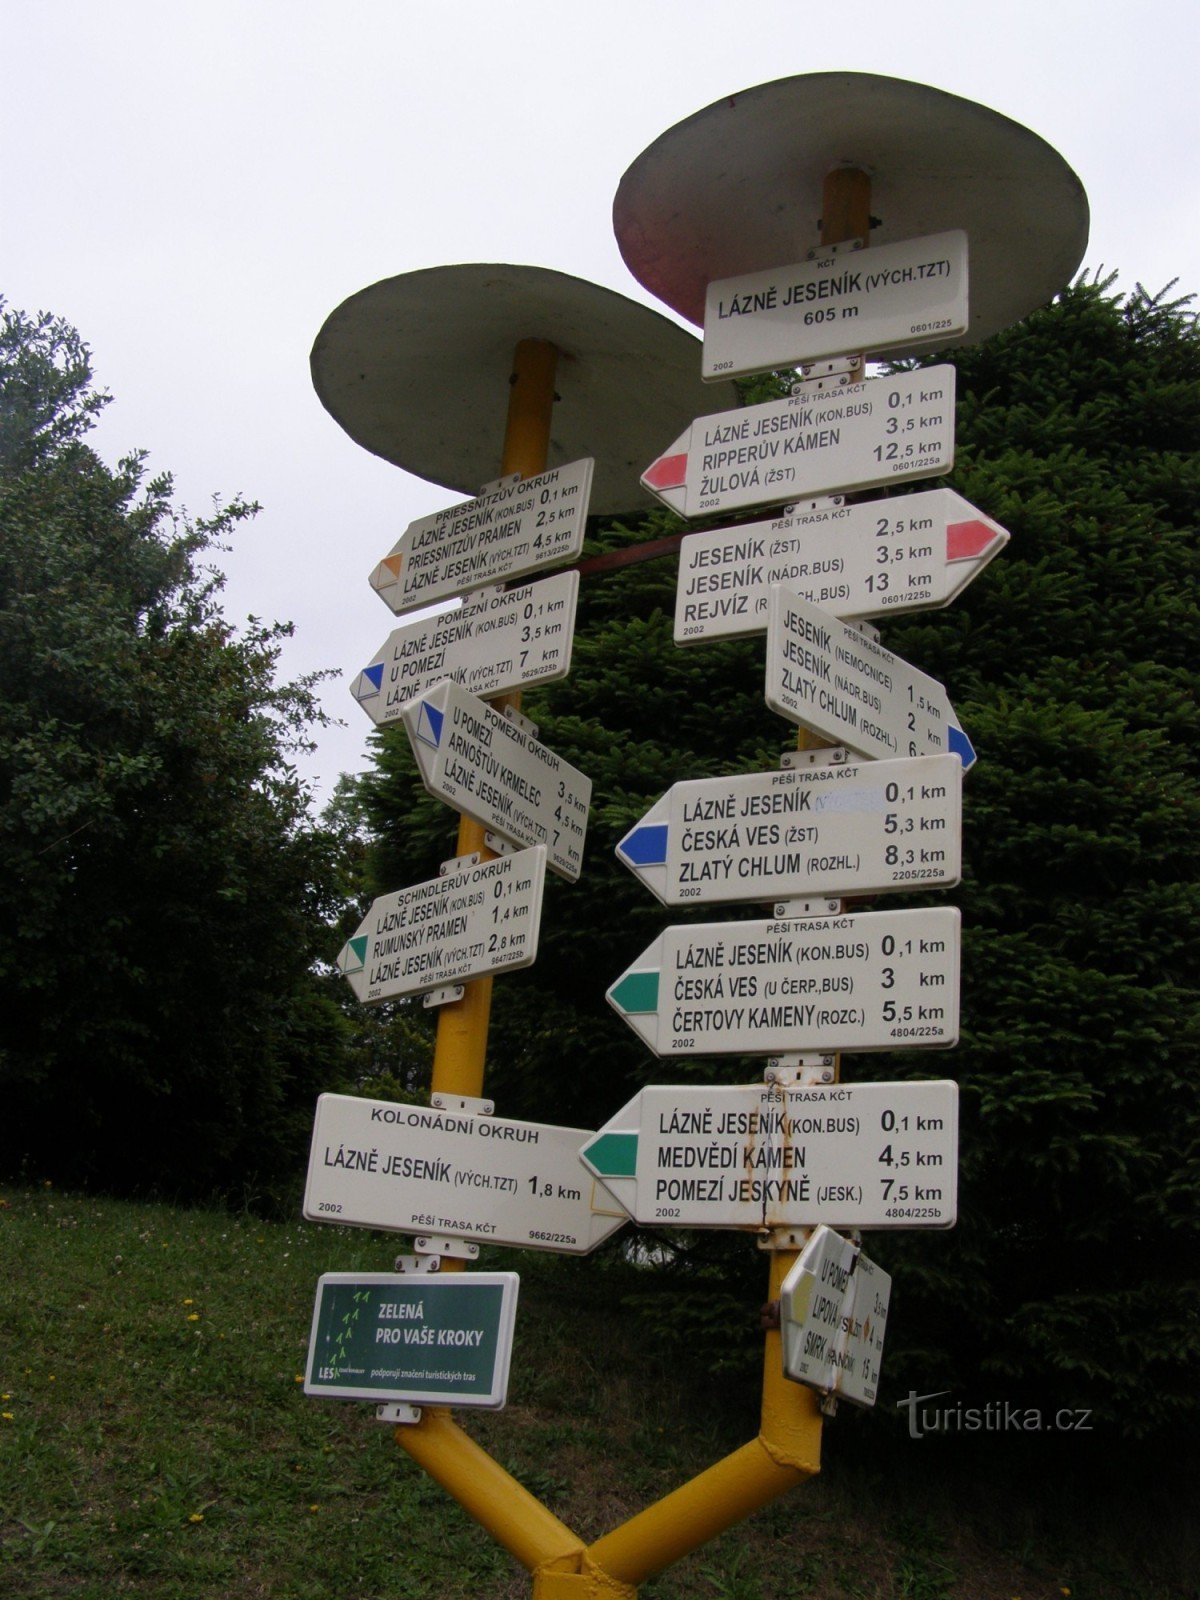 Spa Jeseník - η κύρια τουριστική πινακίδα